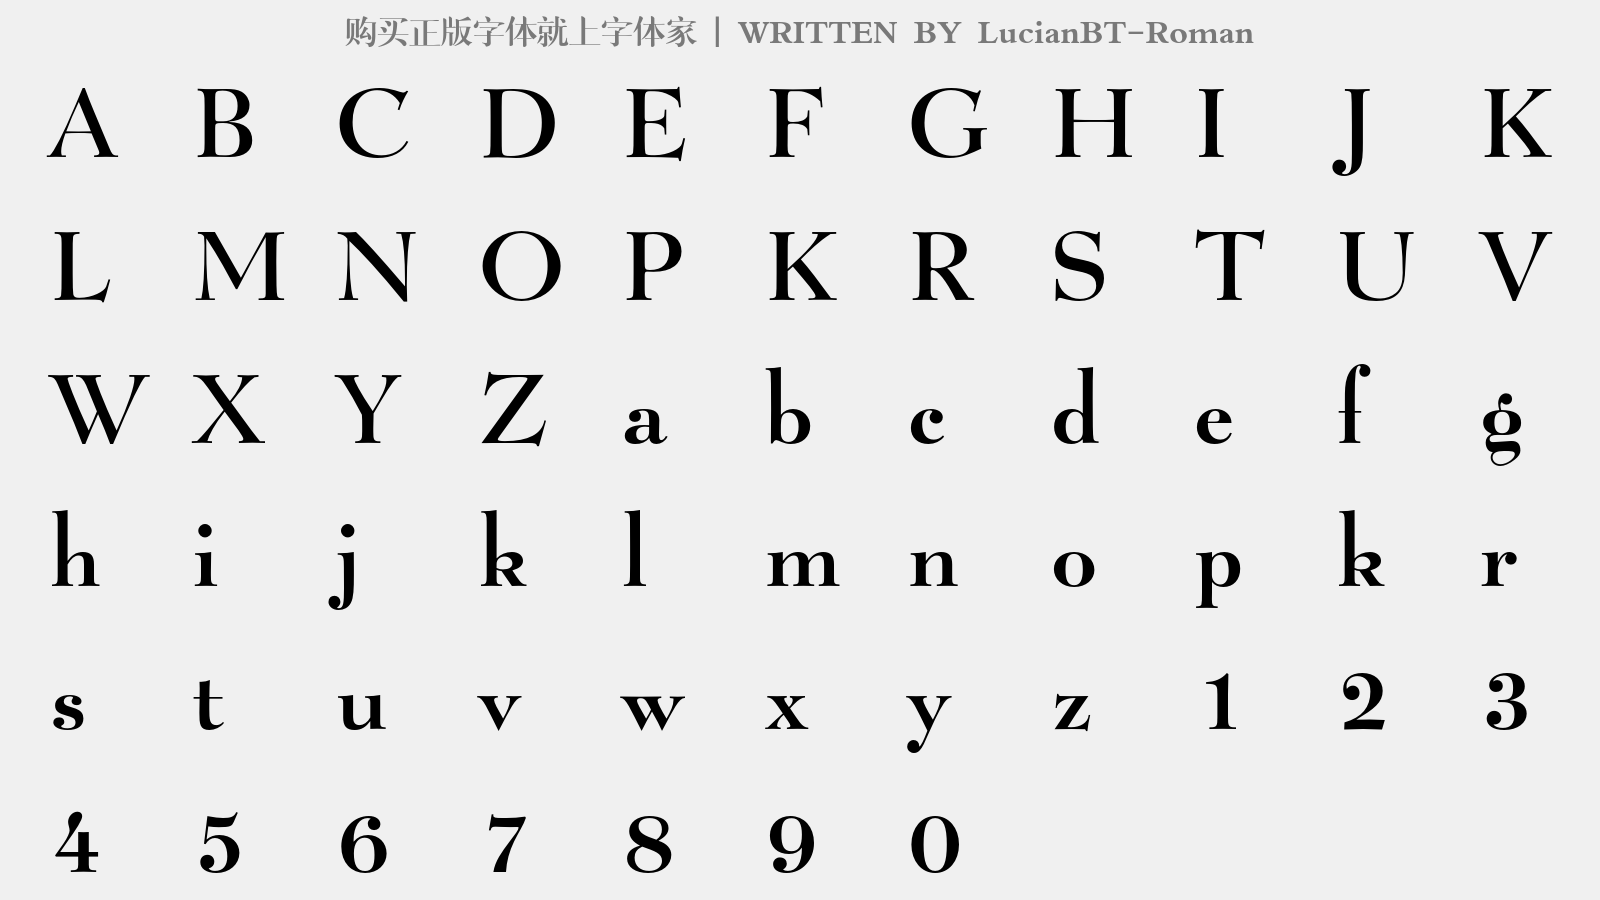 LucianBT-Roman - 大写字母/小写字母/数字